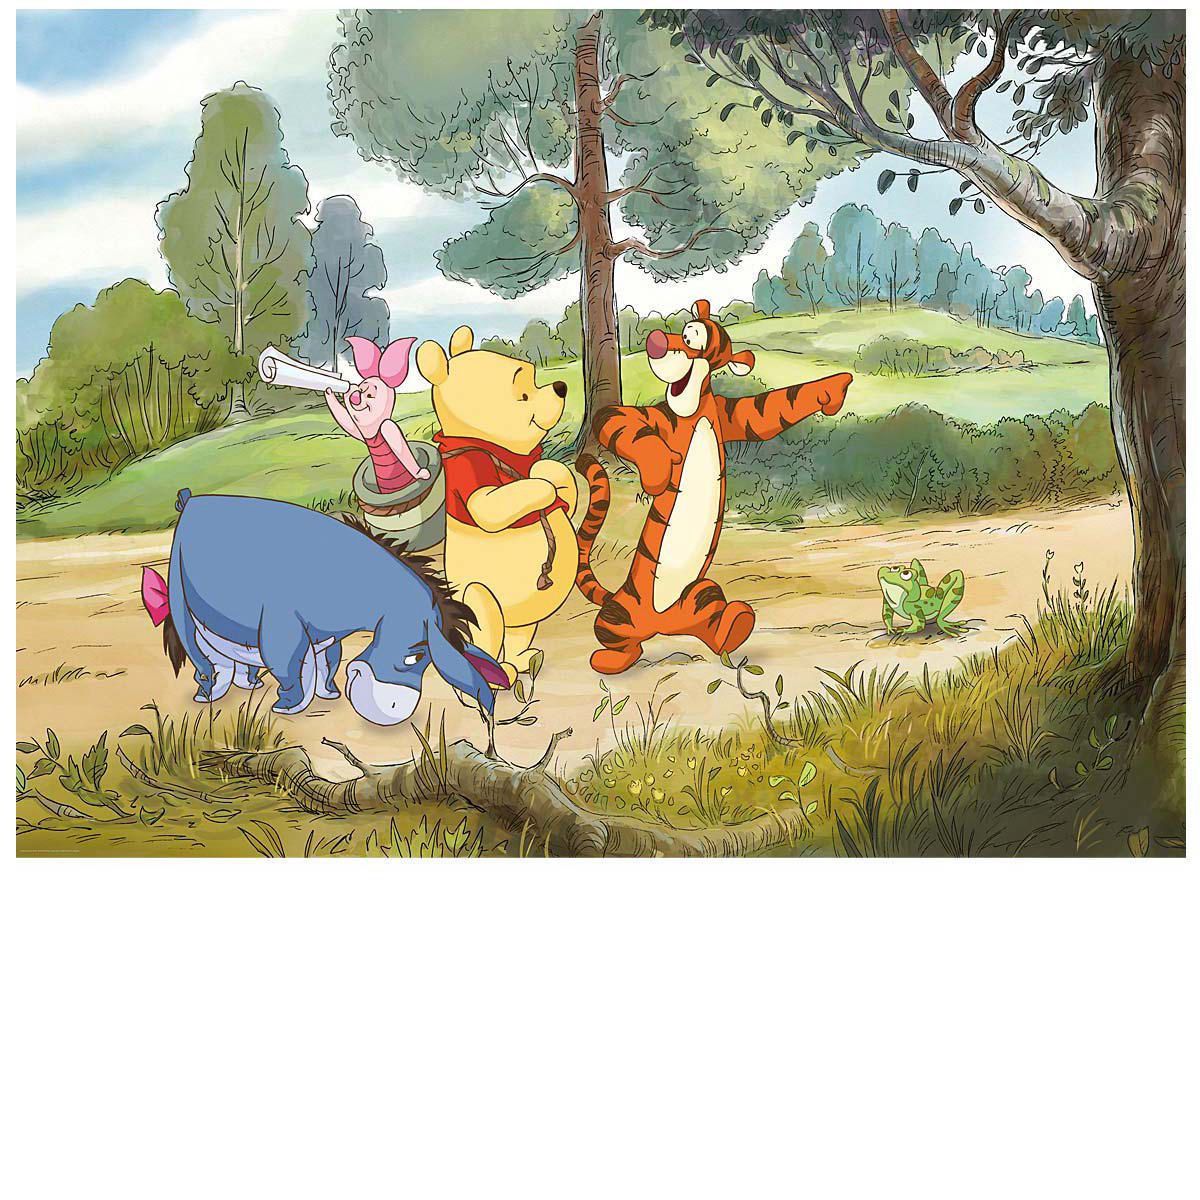 Jeden Tag ein neues Abenteuer Wenn Winnie Puuh mit seinen Freunden durch den Hundertmorgenwald streift, werden Kinderträume wahr. Gesamt vier Teile, inklusive Kleister und ausführlicher Montageanleitung, Maße: 254 x 184 cm, Material: Papier.<br>